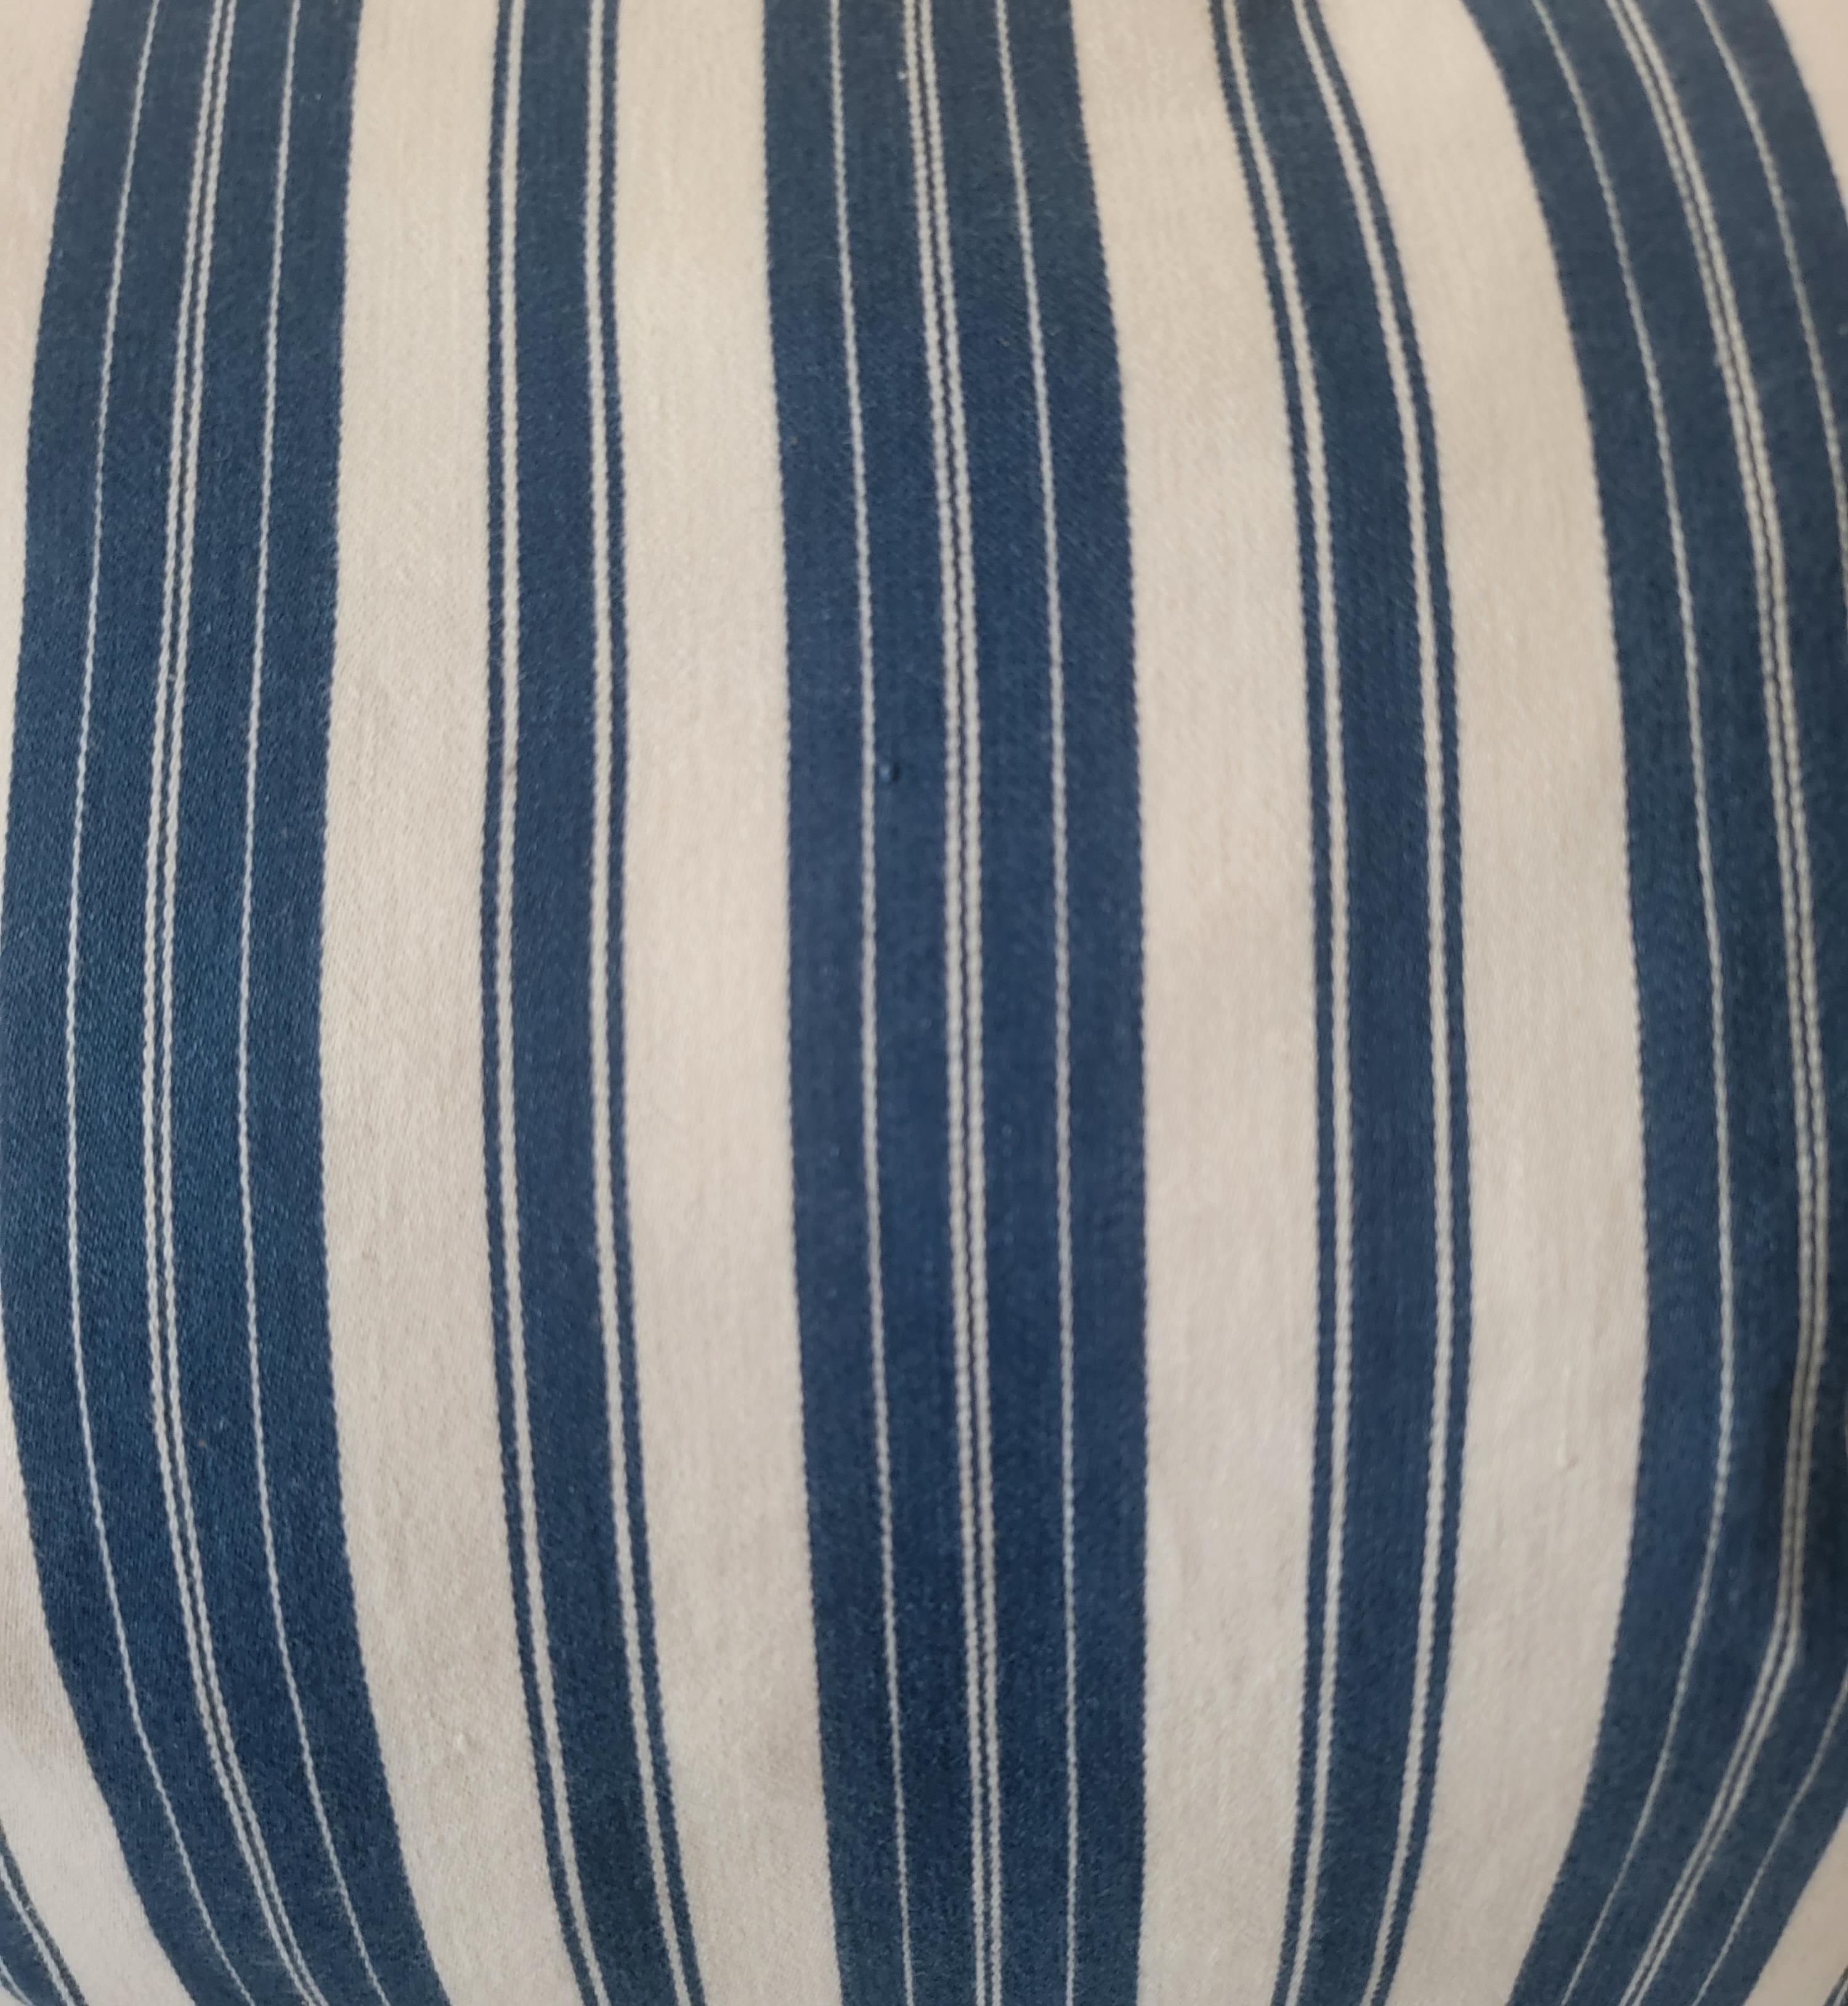 Coussins en coutil rayé bleu et blanc du 19e siècle, avec dossier en lin, duvets et inserts en plumes. Les rayures bleues sont très présentes dans cette série. Une couleur bleue intense et une bande épaisse font que les rayures bleues l'emportent